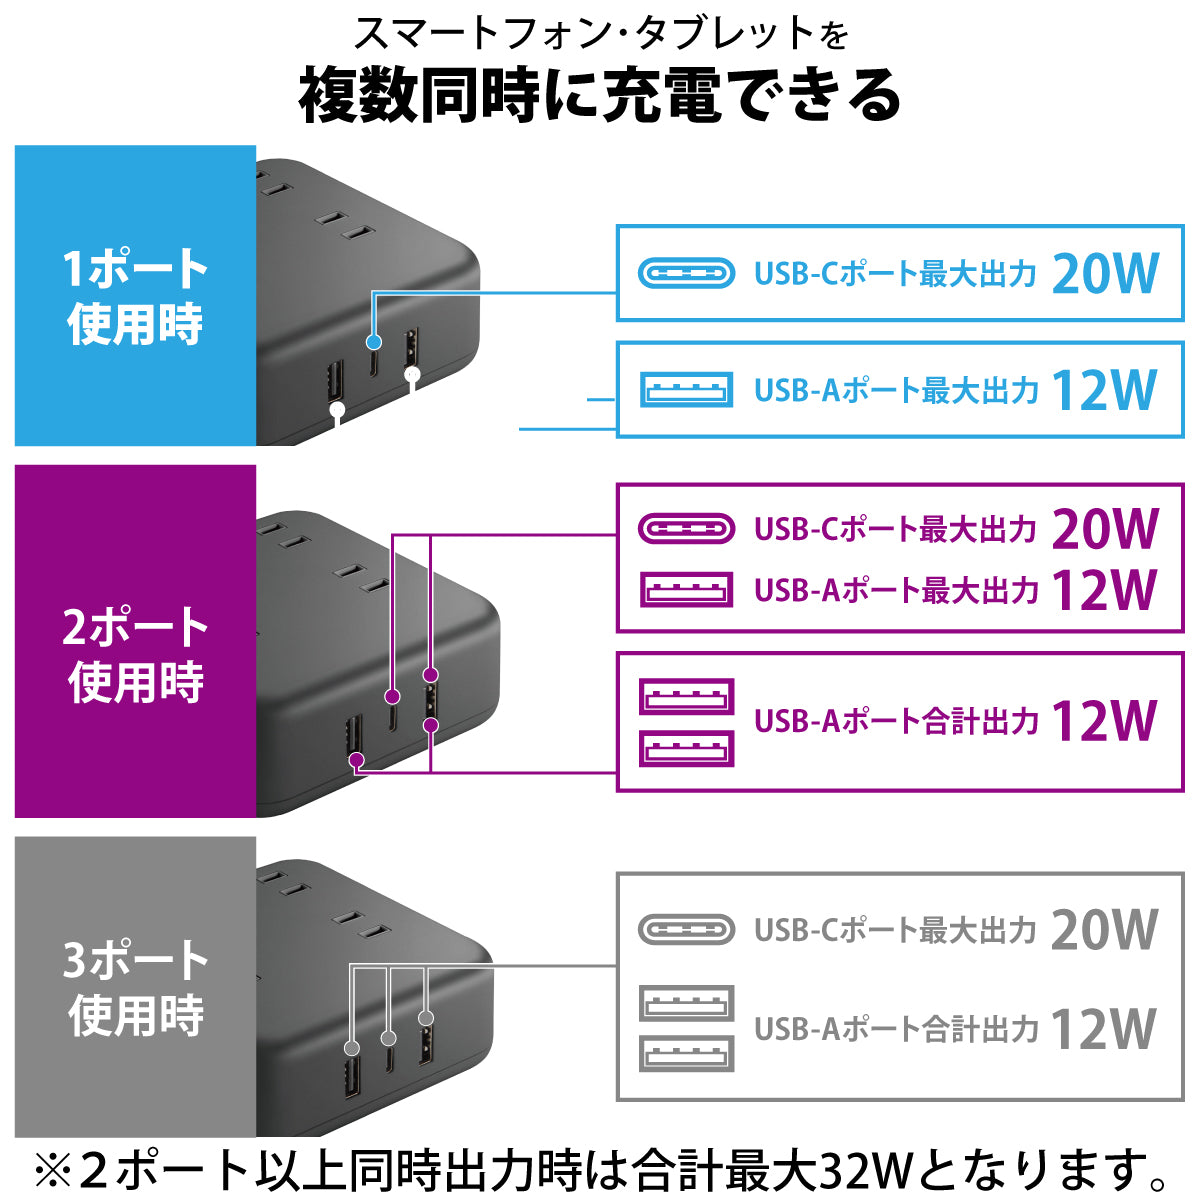 エレコム USBタップ USB Type-C×1(最大20W) USB-A×2(最大12W) 最大出力32W AC差込口×4 1.5m 3m